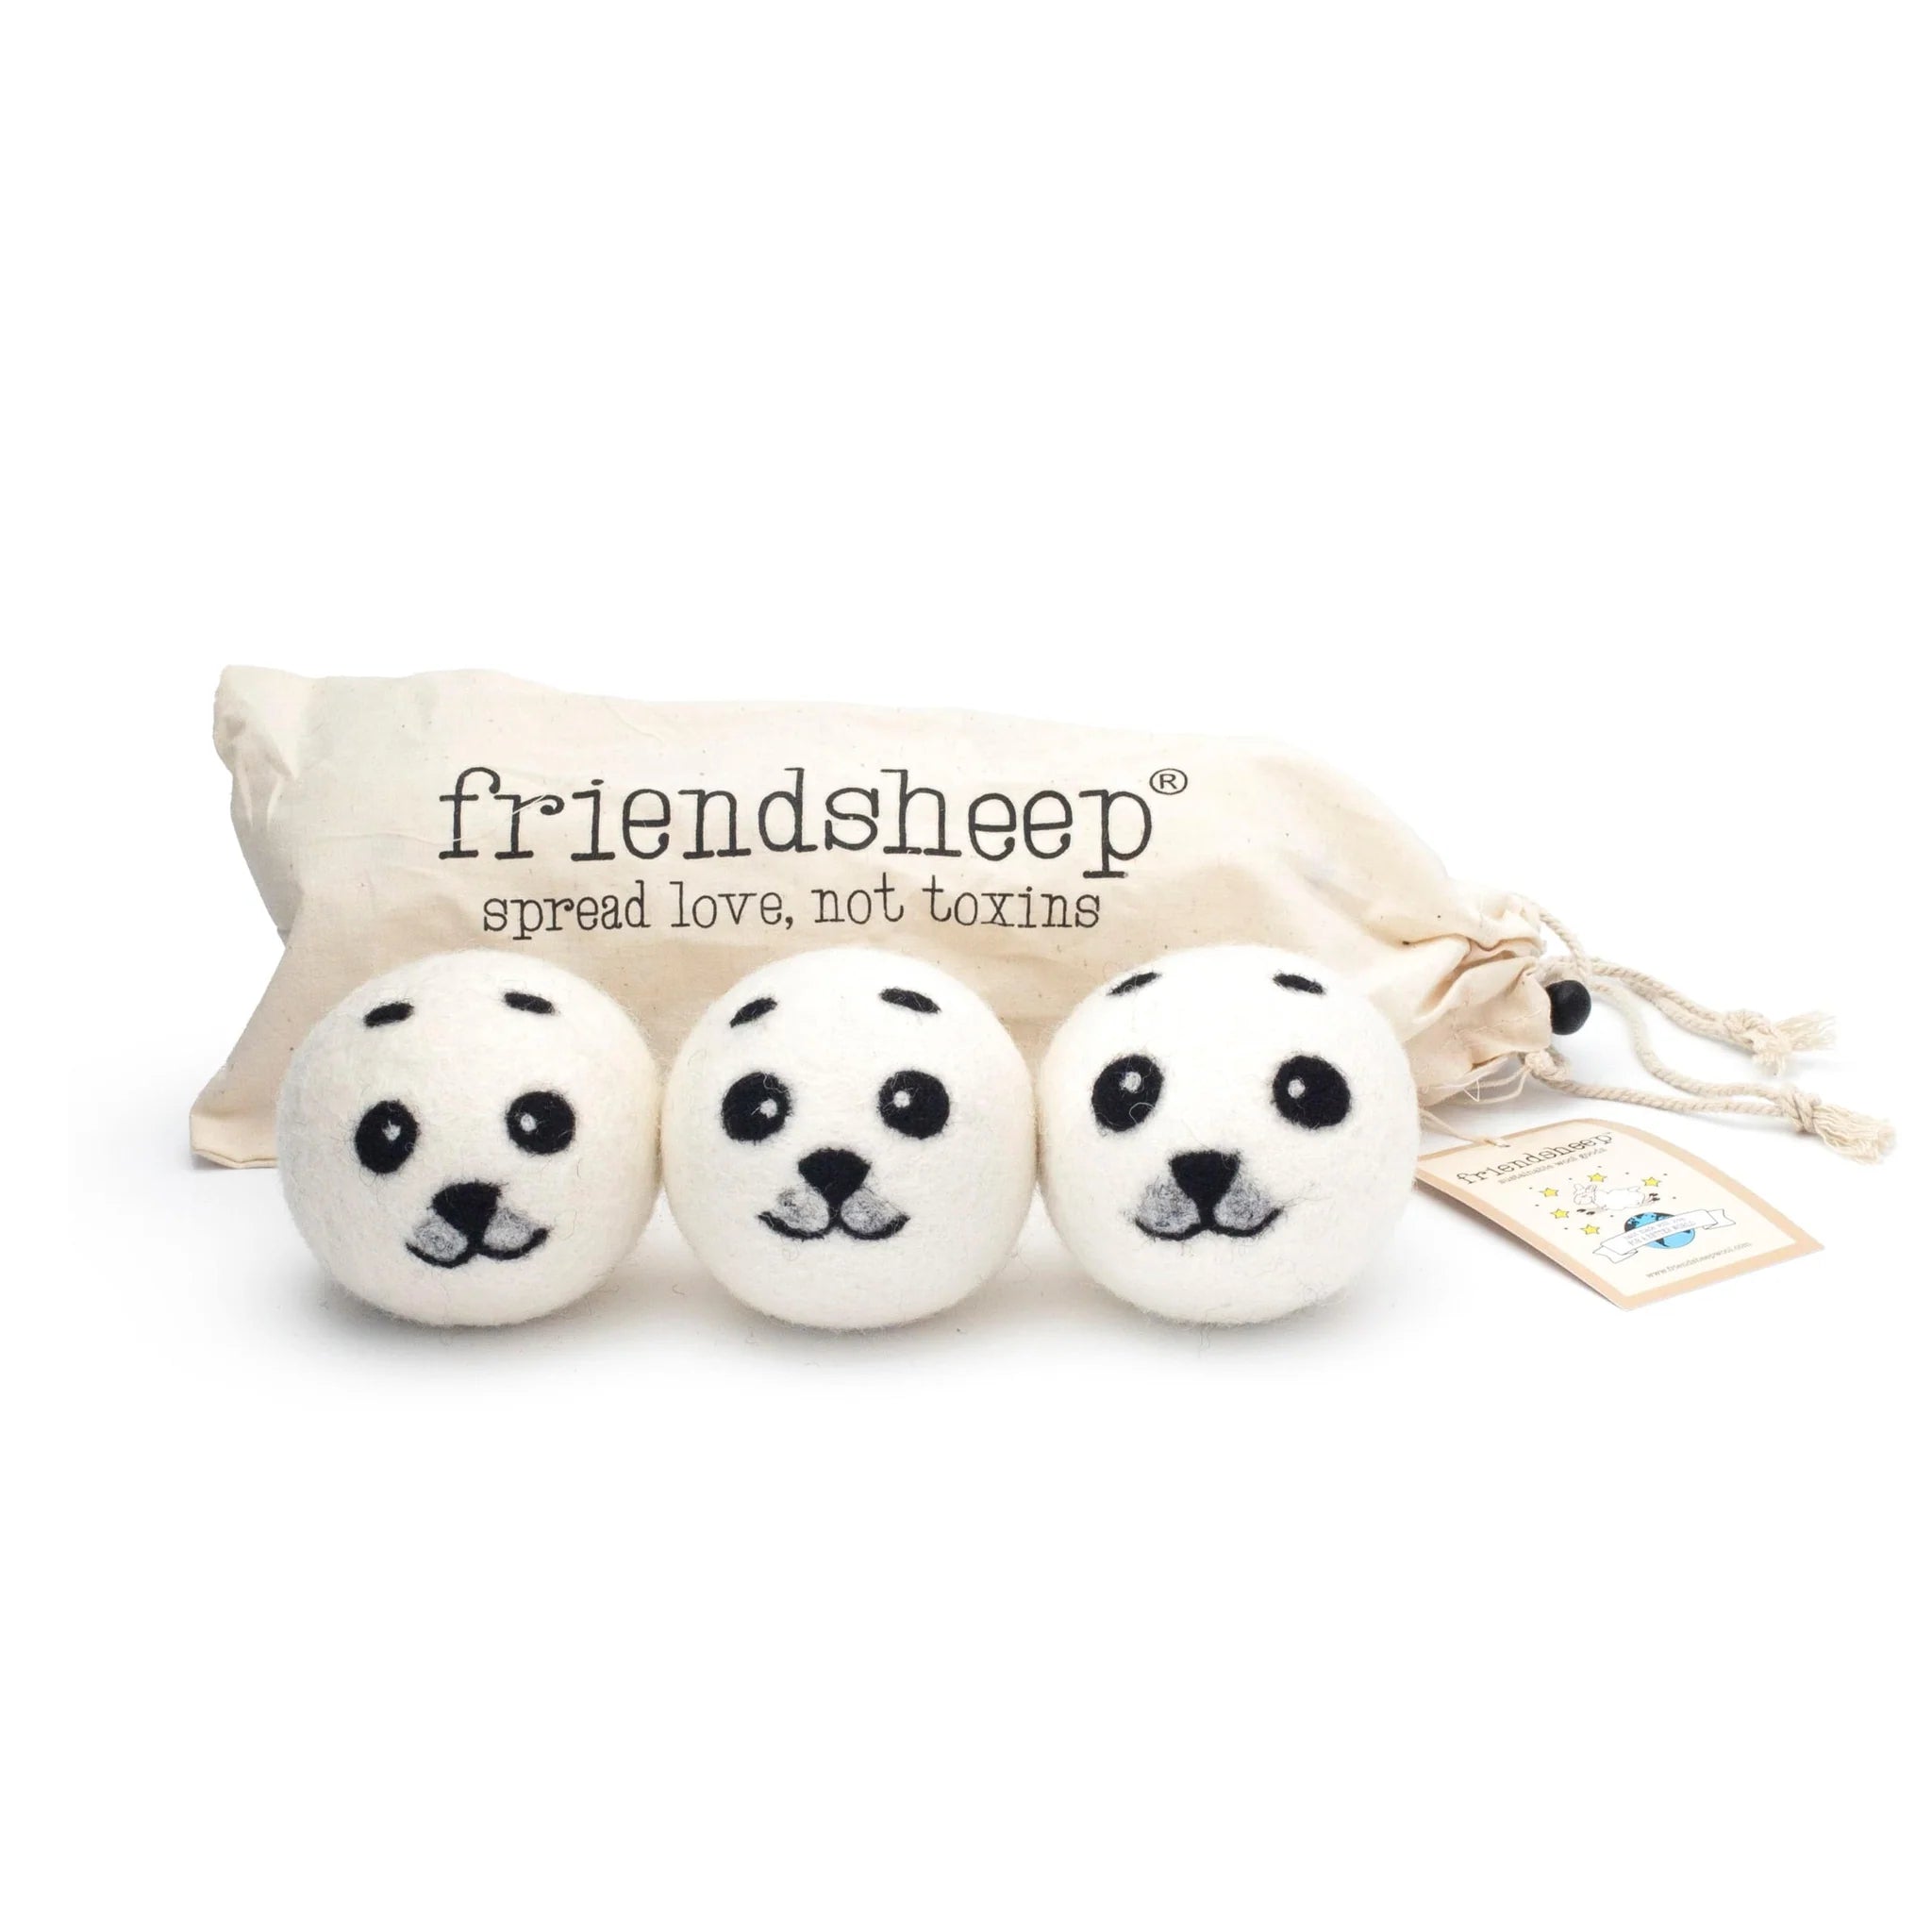 Friendsheep - Baby Seals Eco Dryer Balls - Set of 3